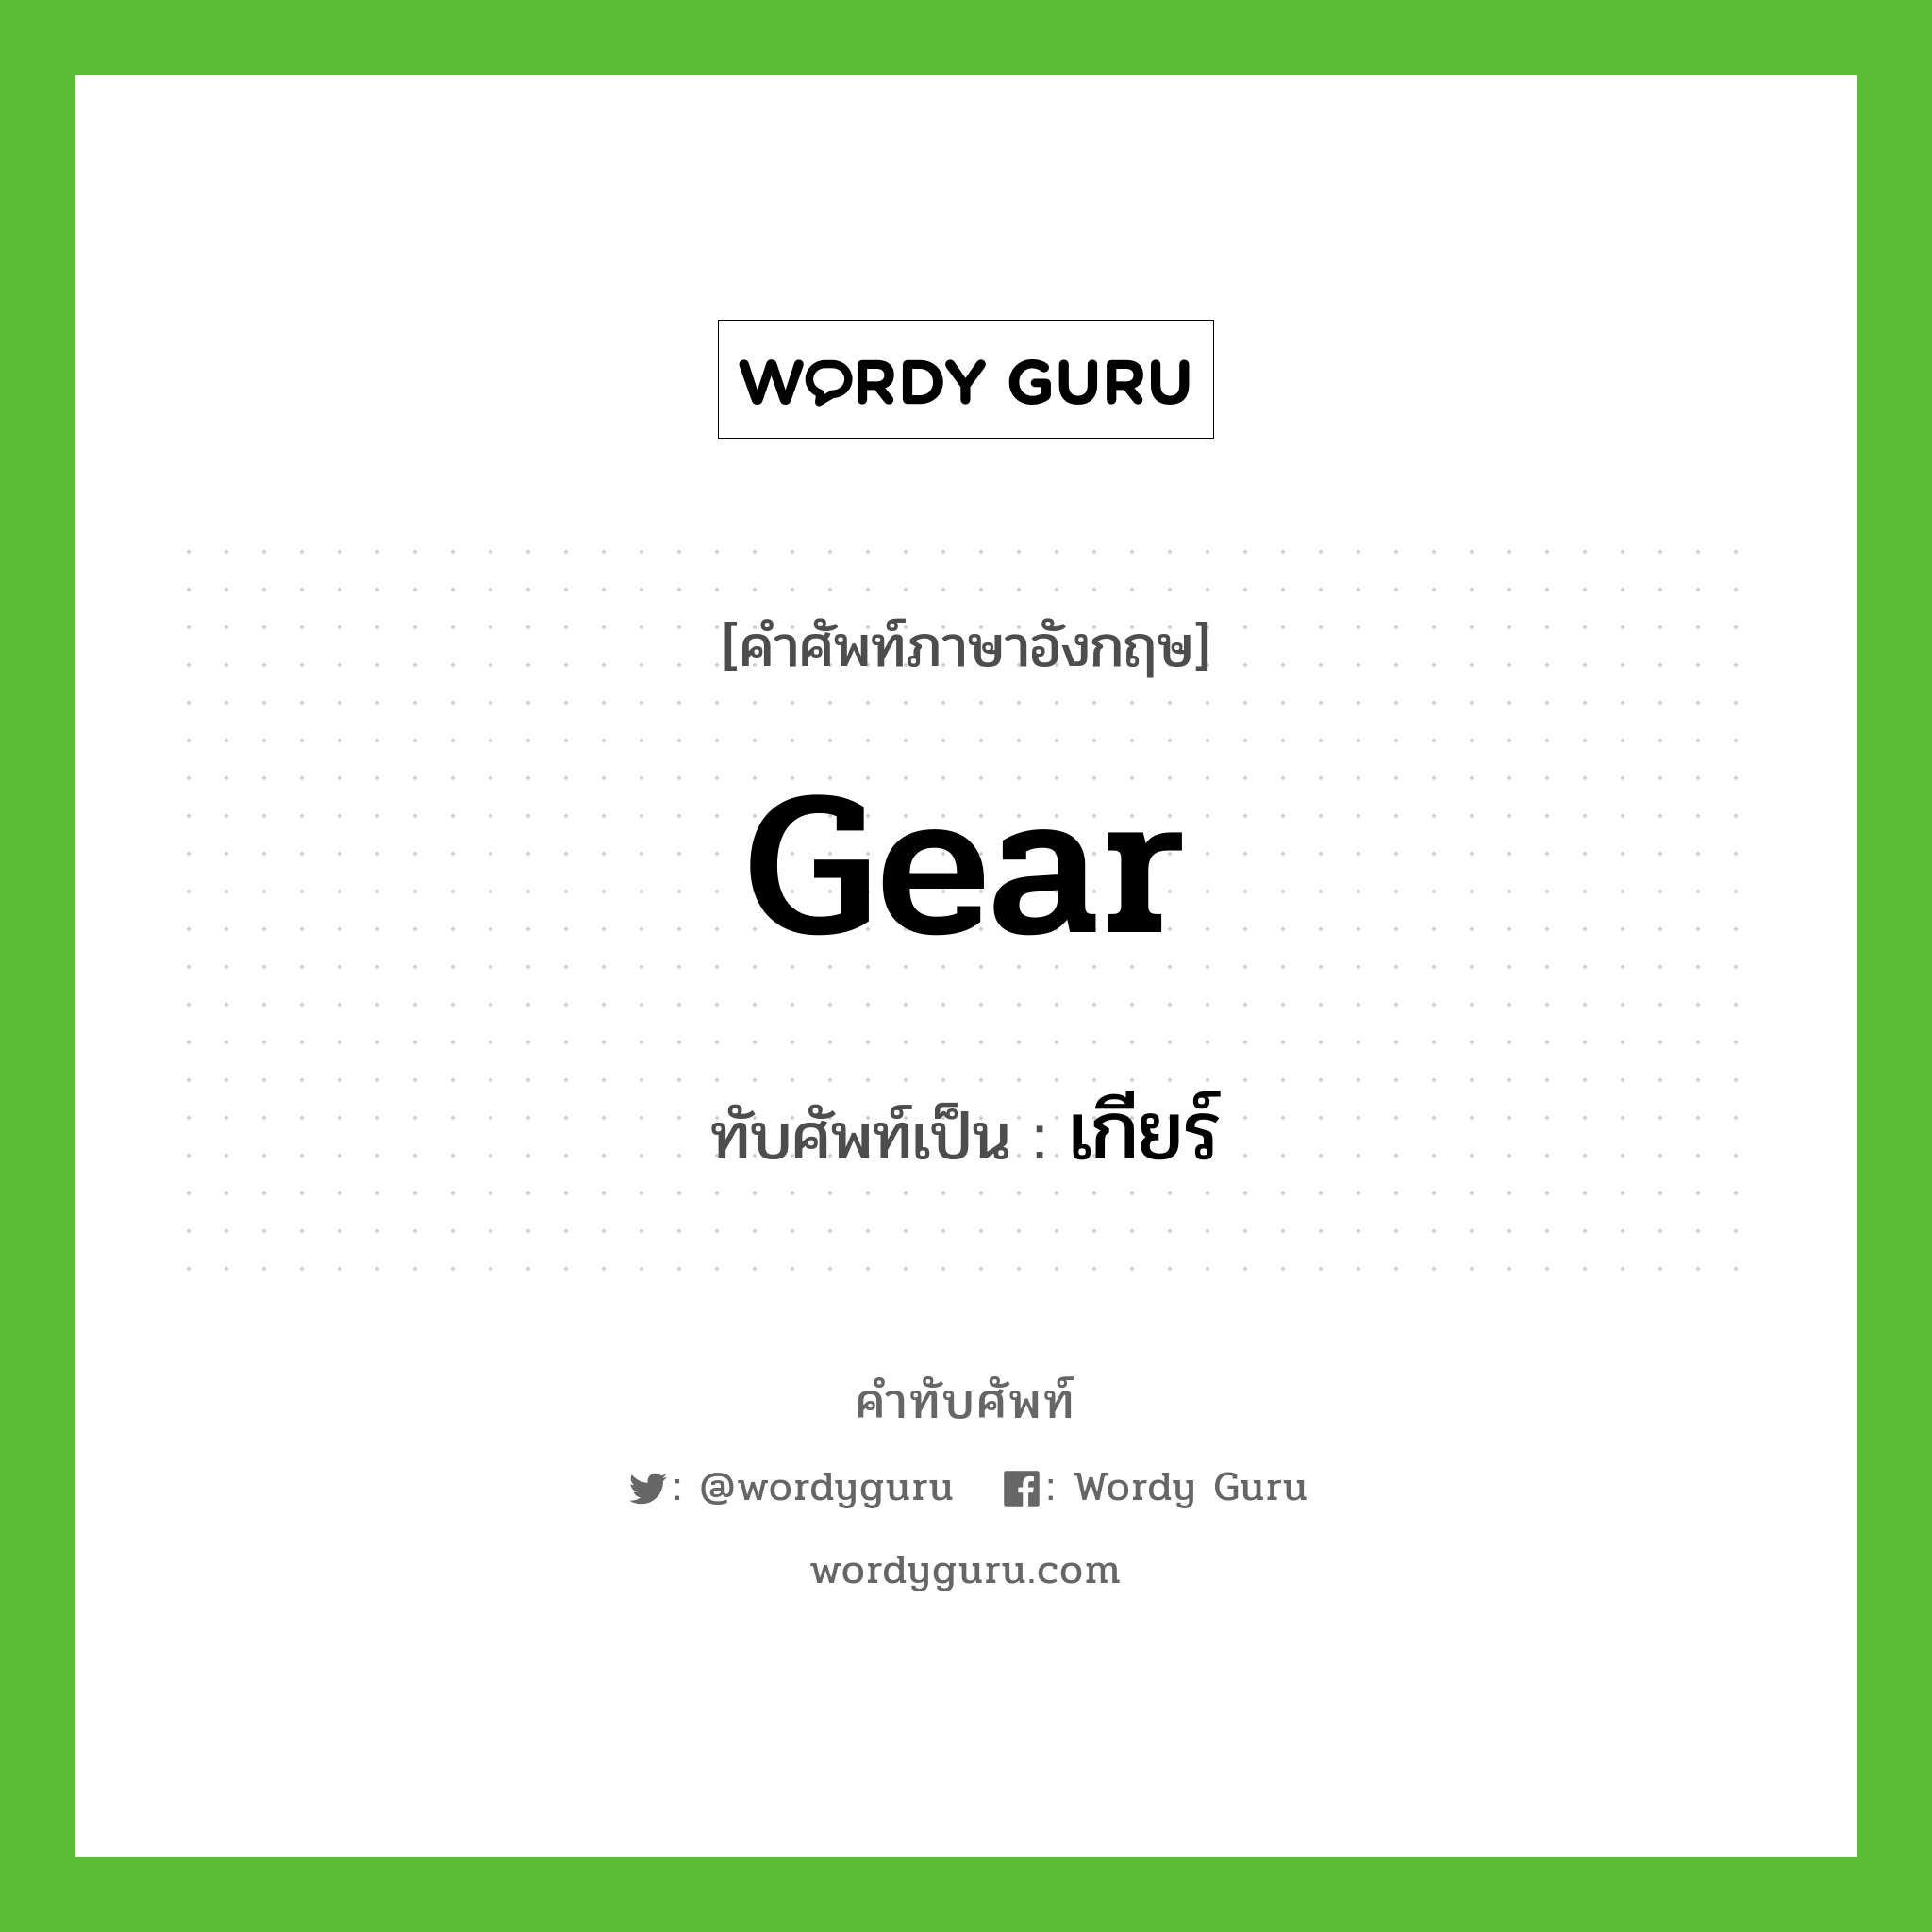 gear เขียนเป็นคำไทยว่าอะไร?, คำศัพท์ภาษาอังกฤษ gear ทับศัพท์เป็น เกียร์